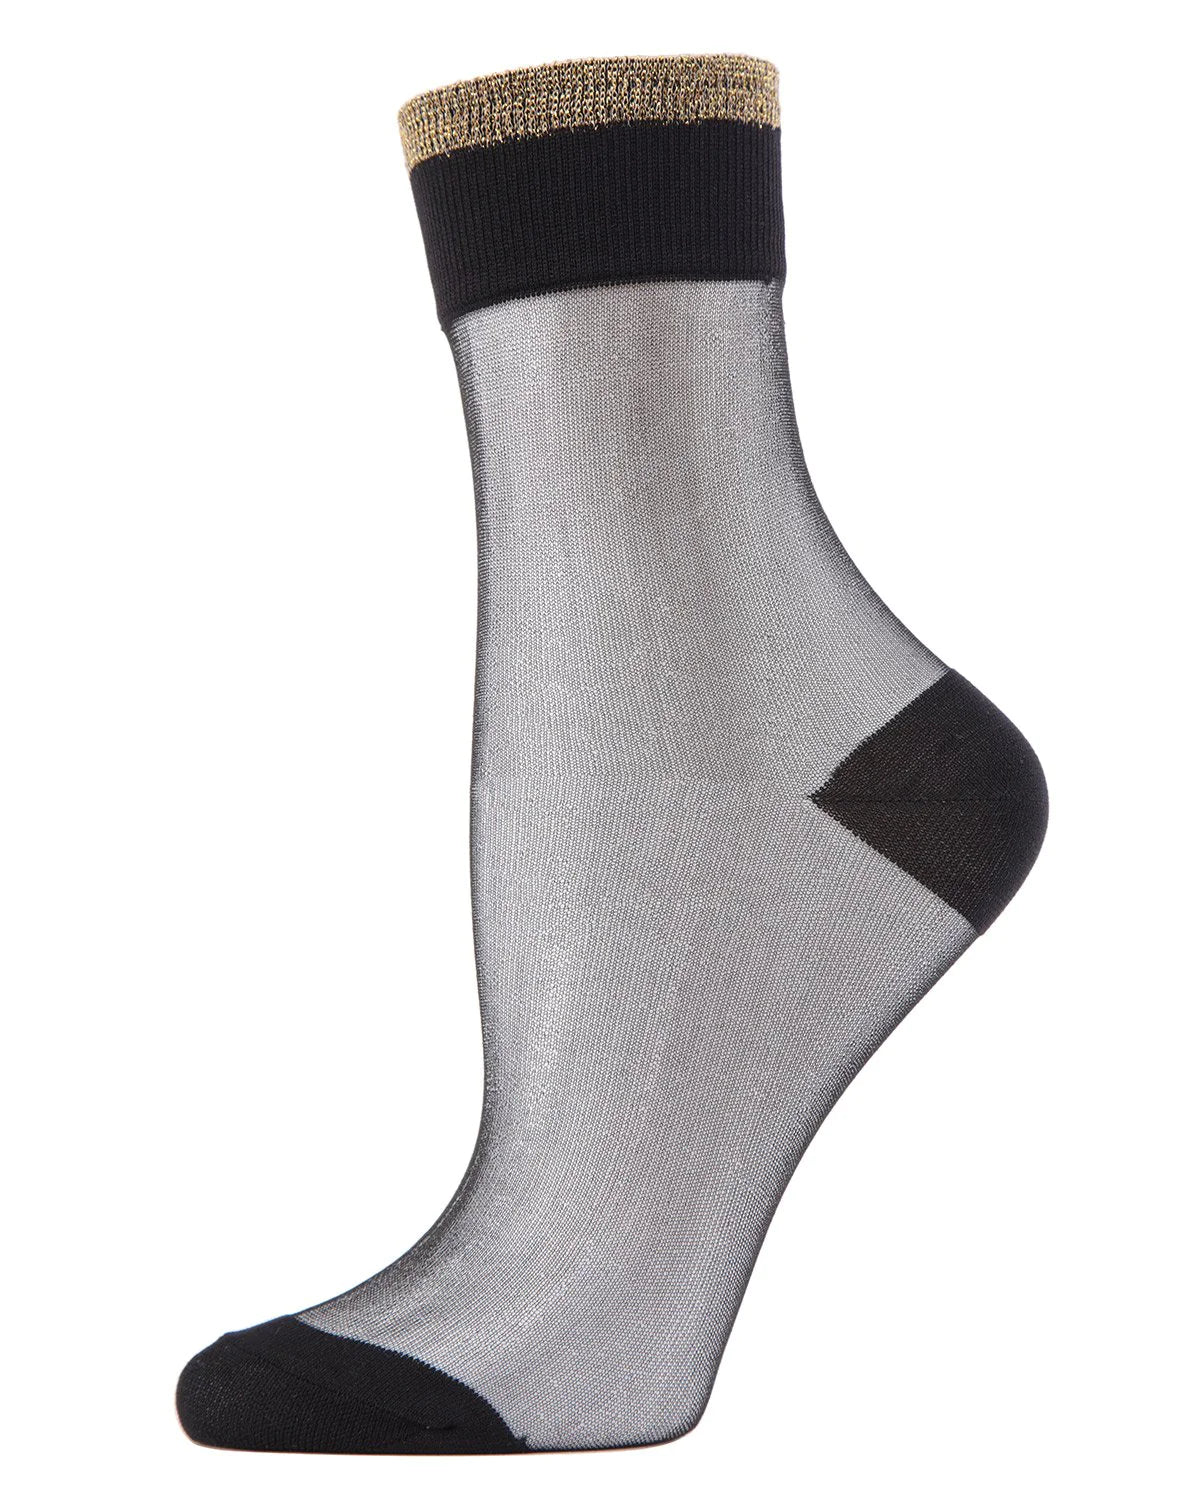 Metallic Topped Sheer Ankle Socks - Black